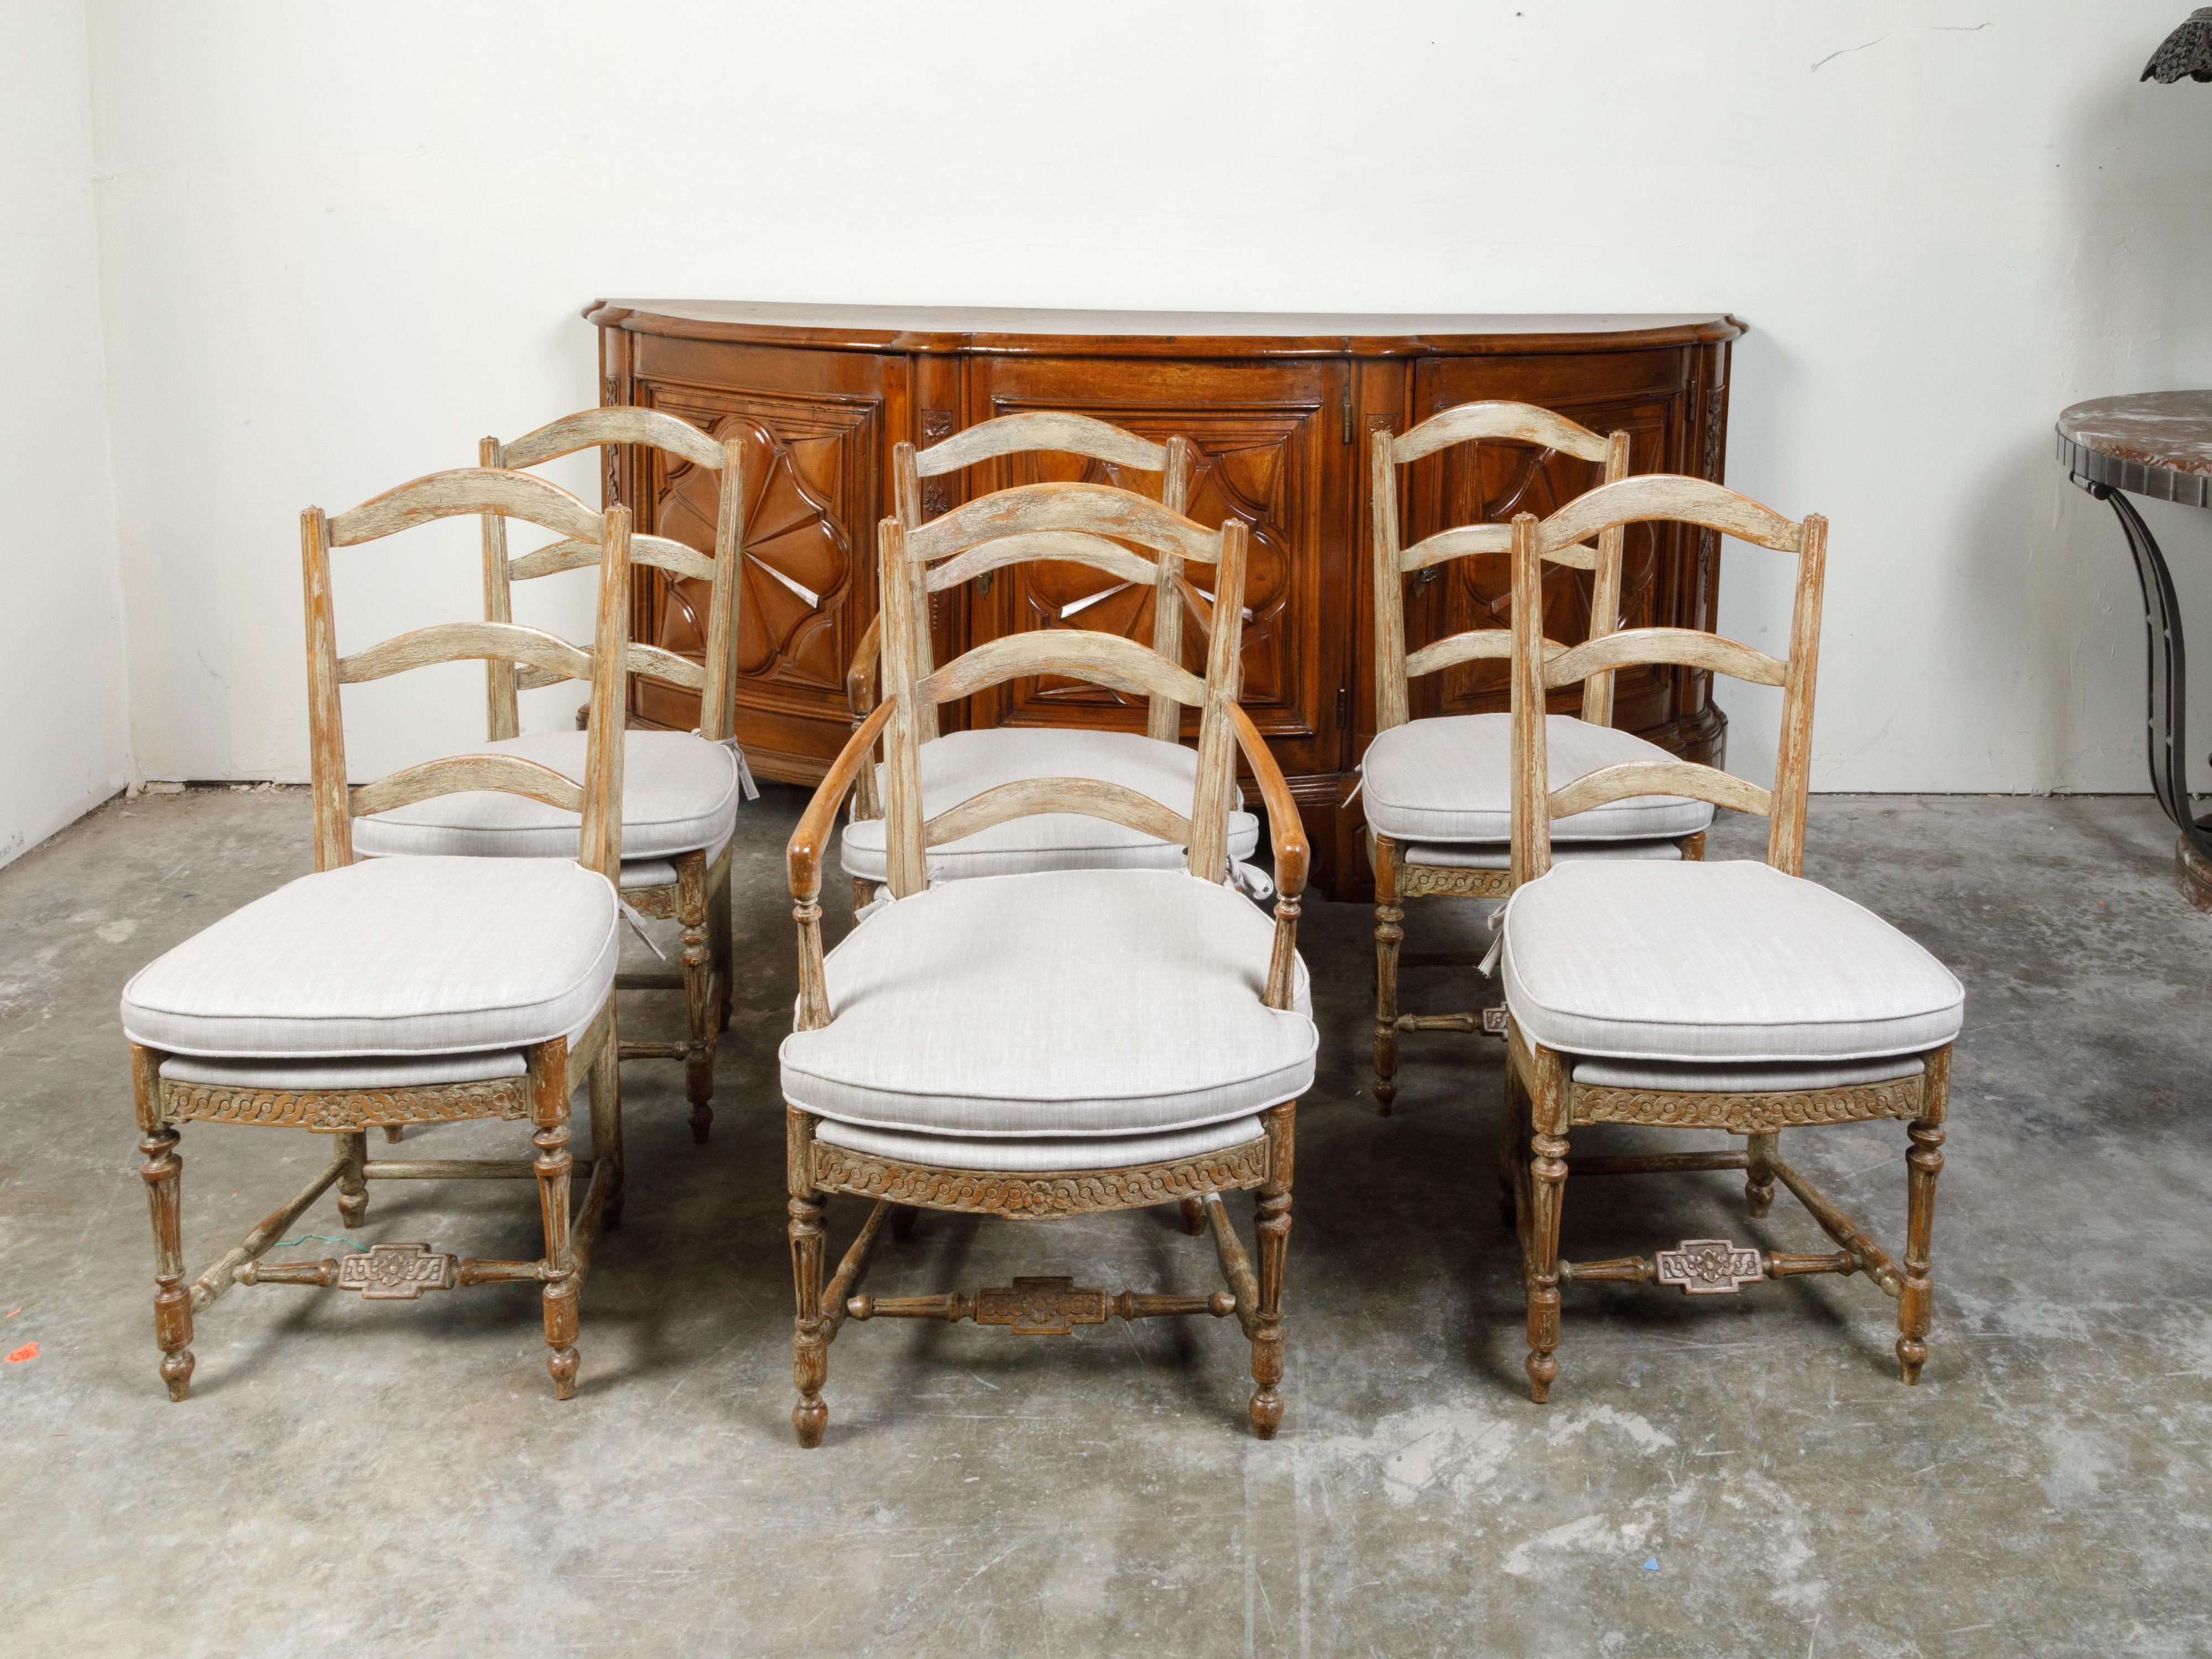 Ein Satz von sechs französischen Esszimmerstühlen aus Holz aus dem 19. Jahrhundert, mit vier Seiten, zwei Armlehnen, geschnitzten Guilloche-Motiven und maßgefertigten Polstern. Diese Esszimmerstühle, die im 19. Jahrhundert in Frankreich hergestellt